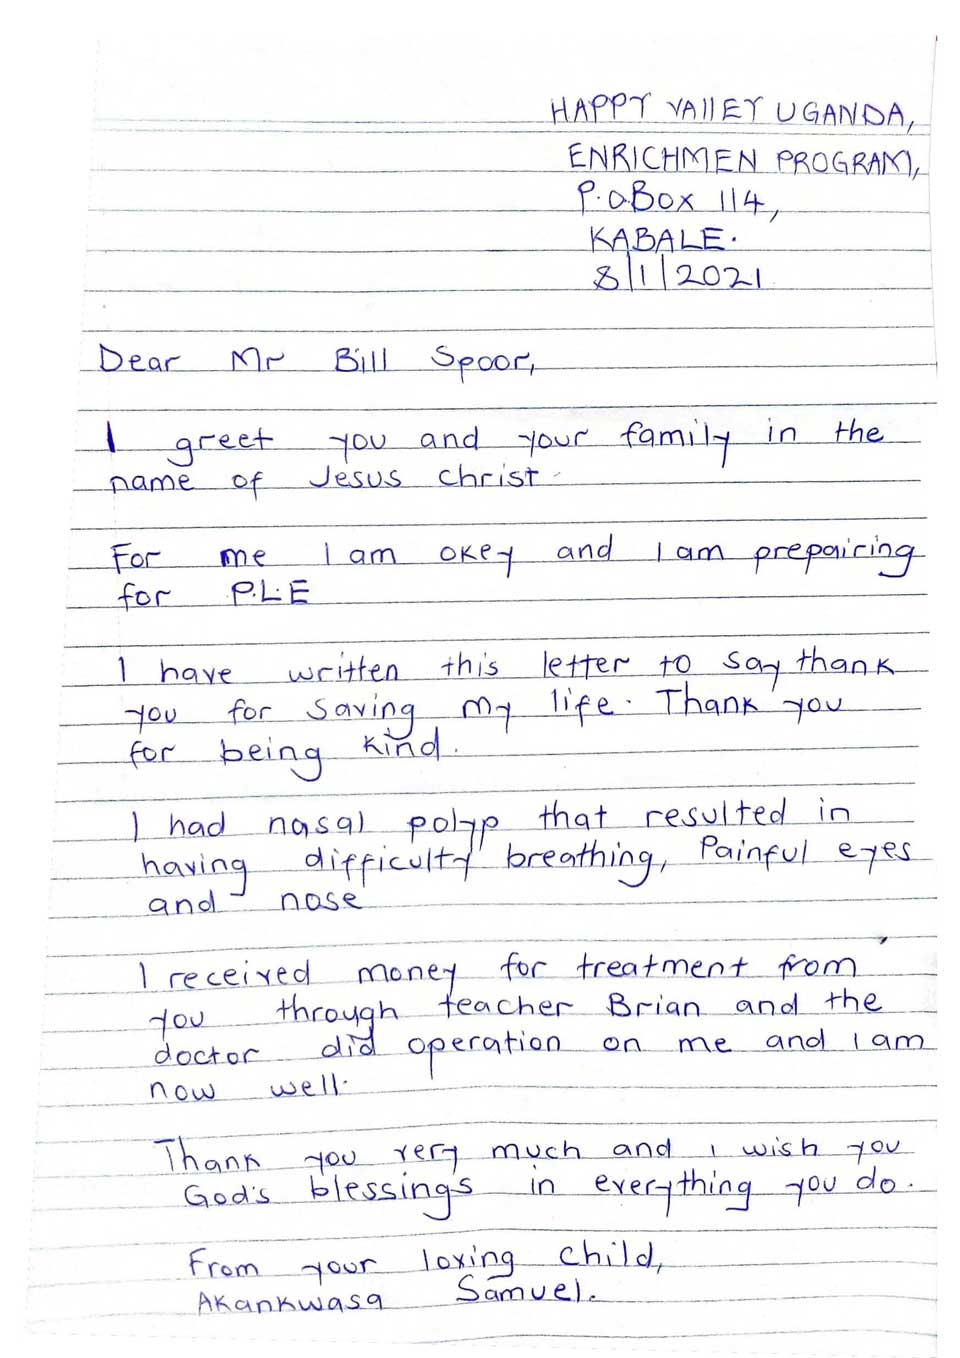 headmaster letter